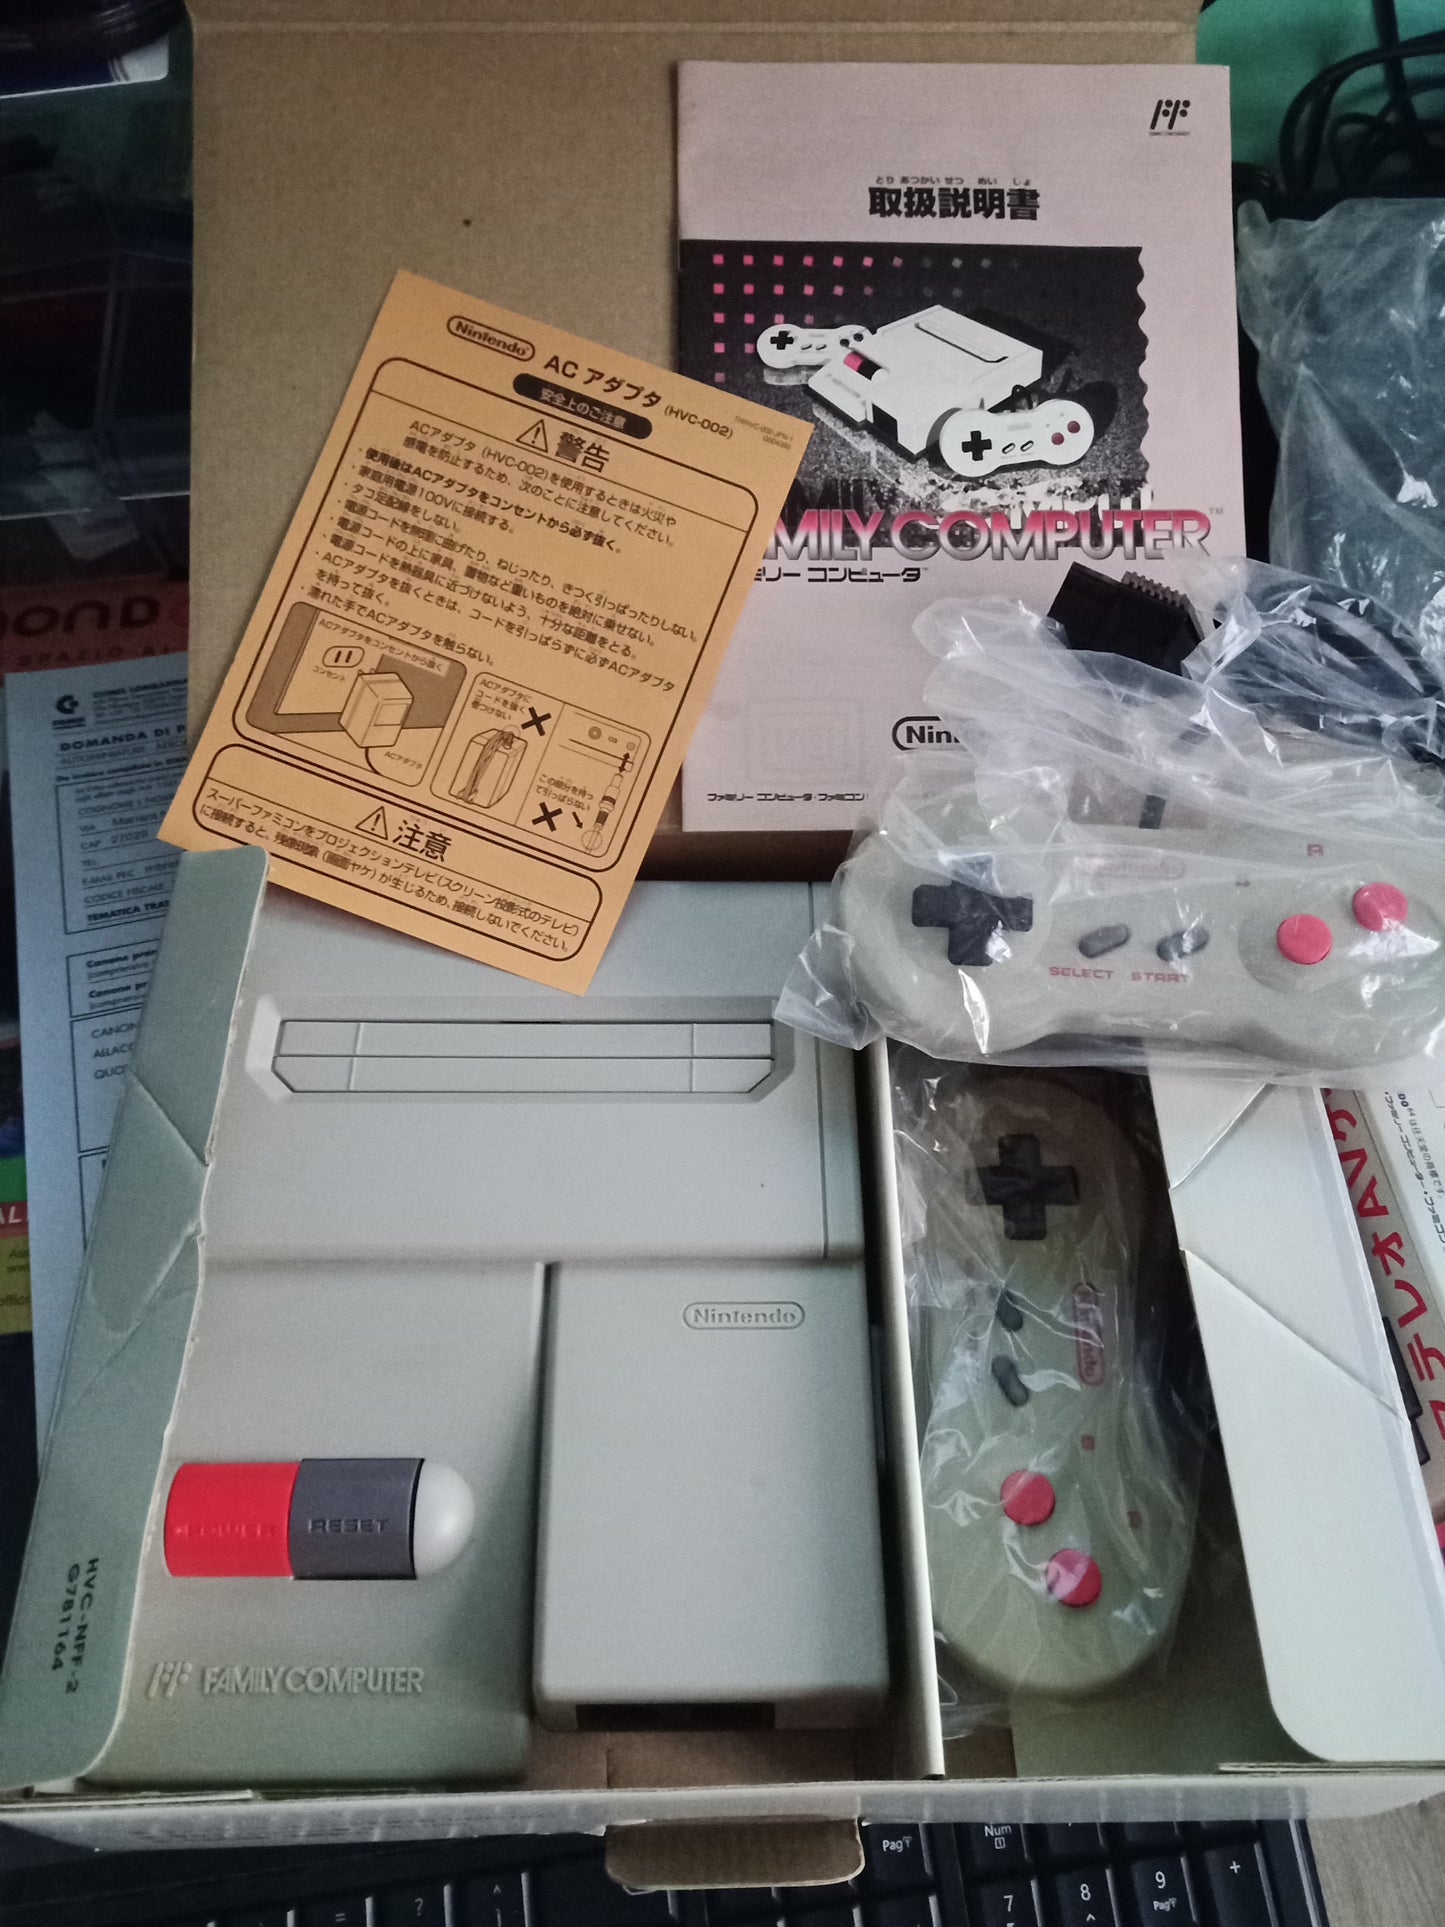 Famicom (1993 version with AV socket)